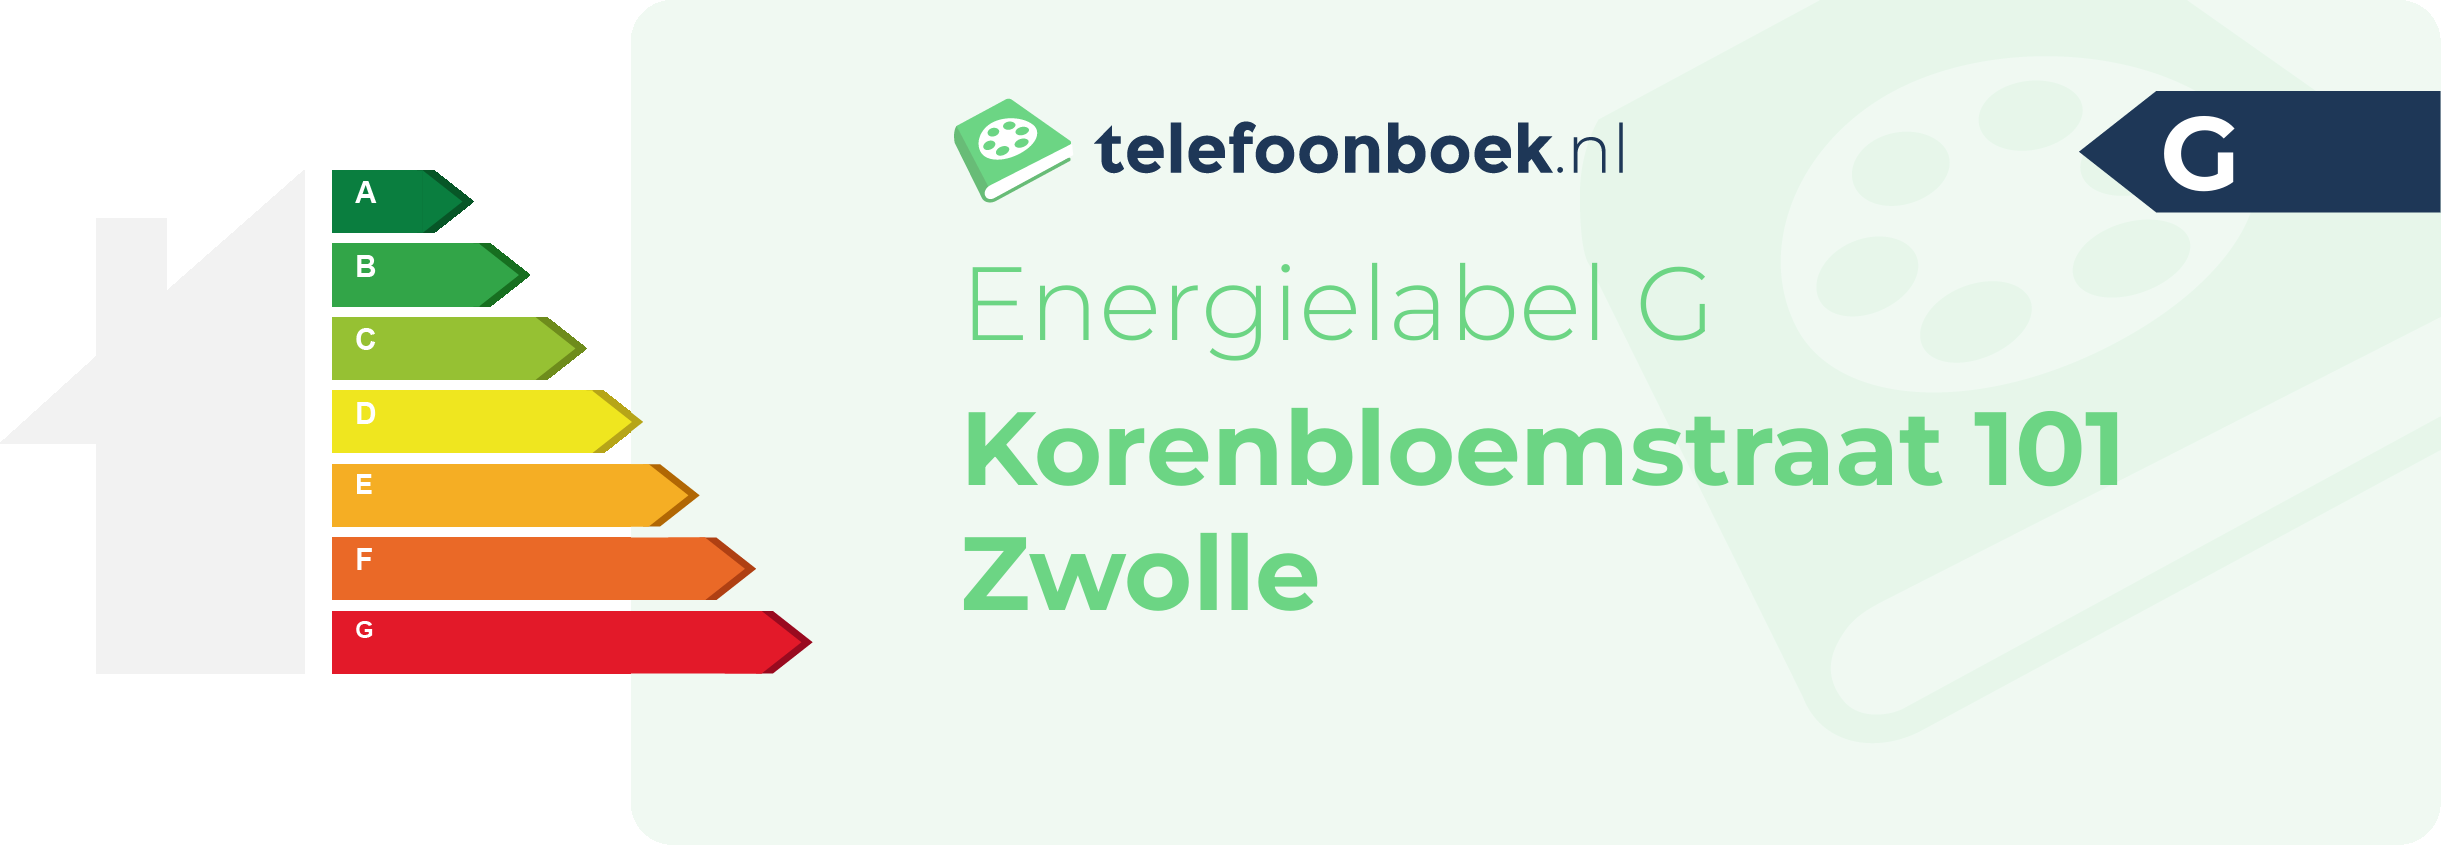 Energielabel Korenbloemstraat 101 Zwolle